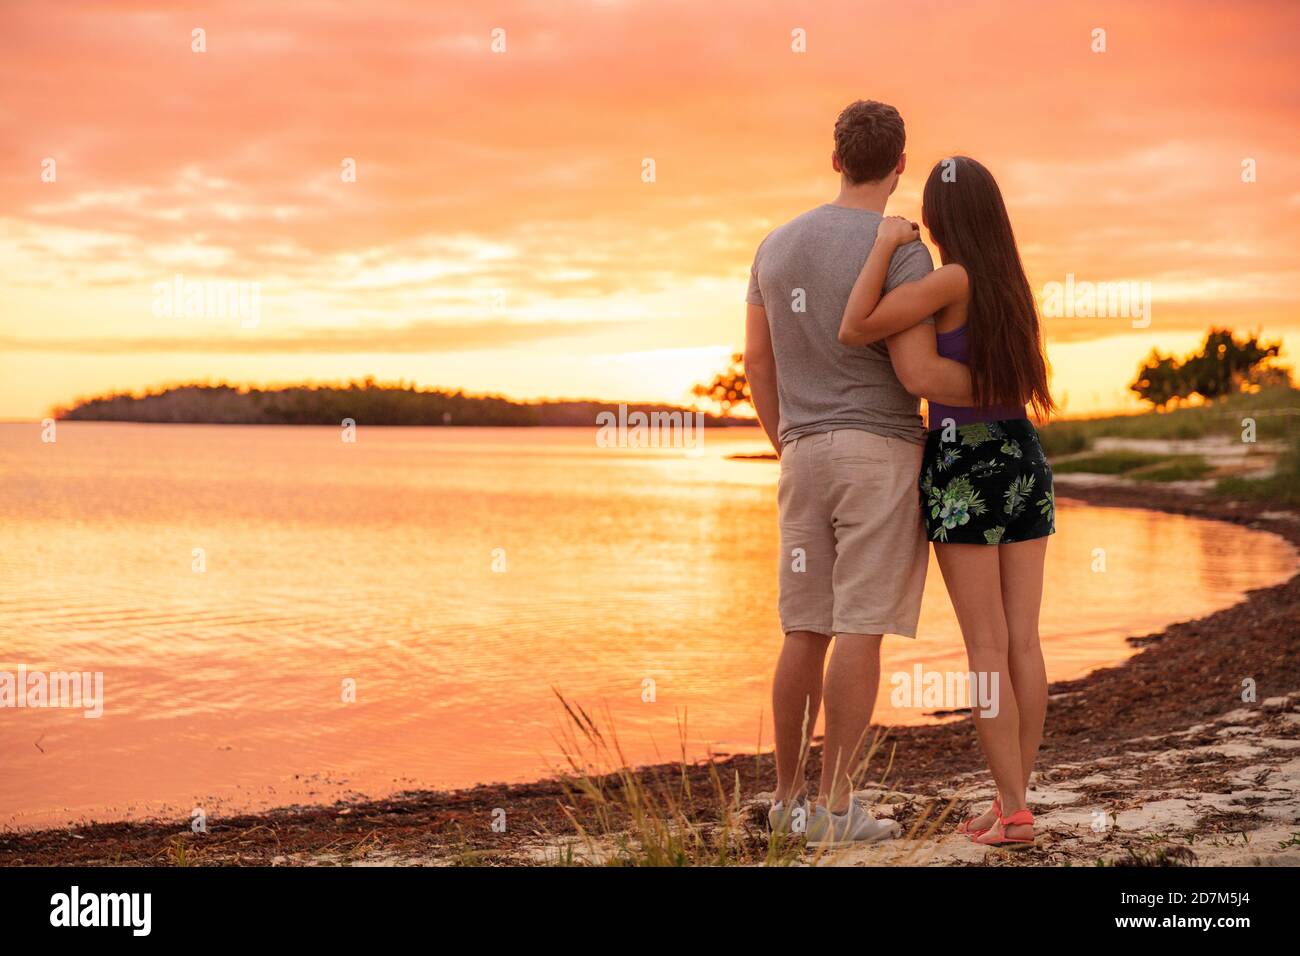 Couple amoureux appréciant le coucher de soleil sur la plage Photo Stock -  Alamy